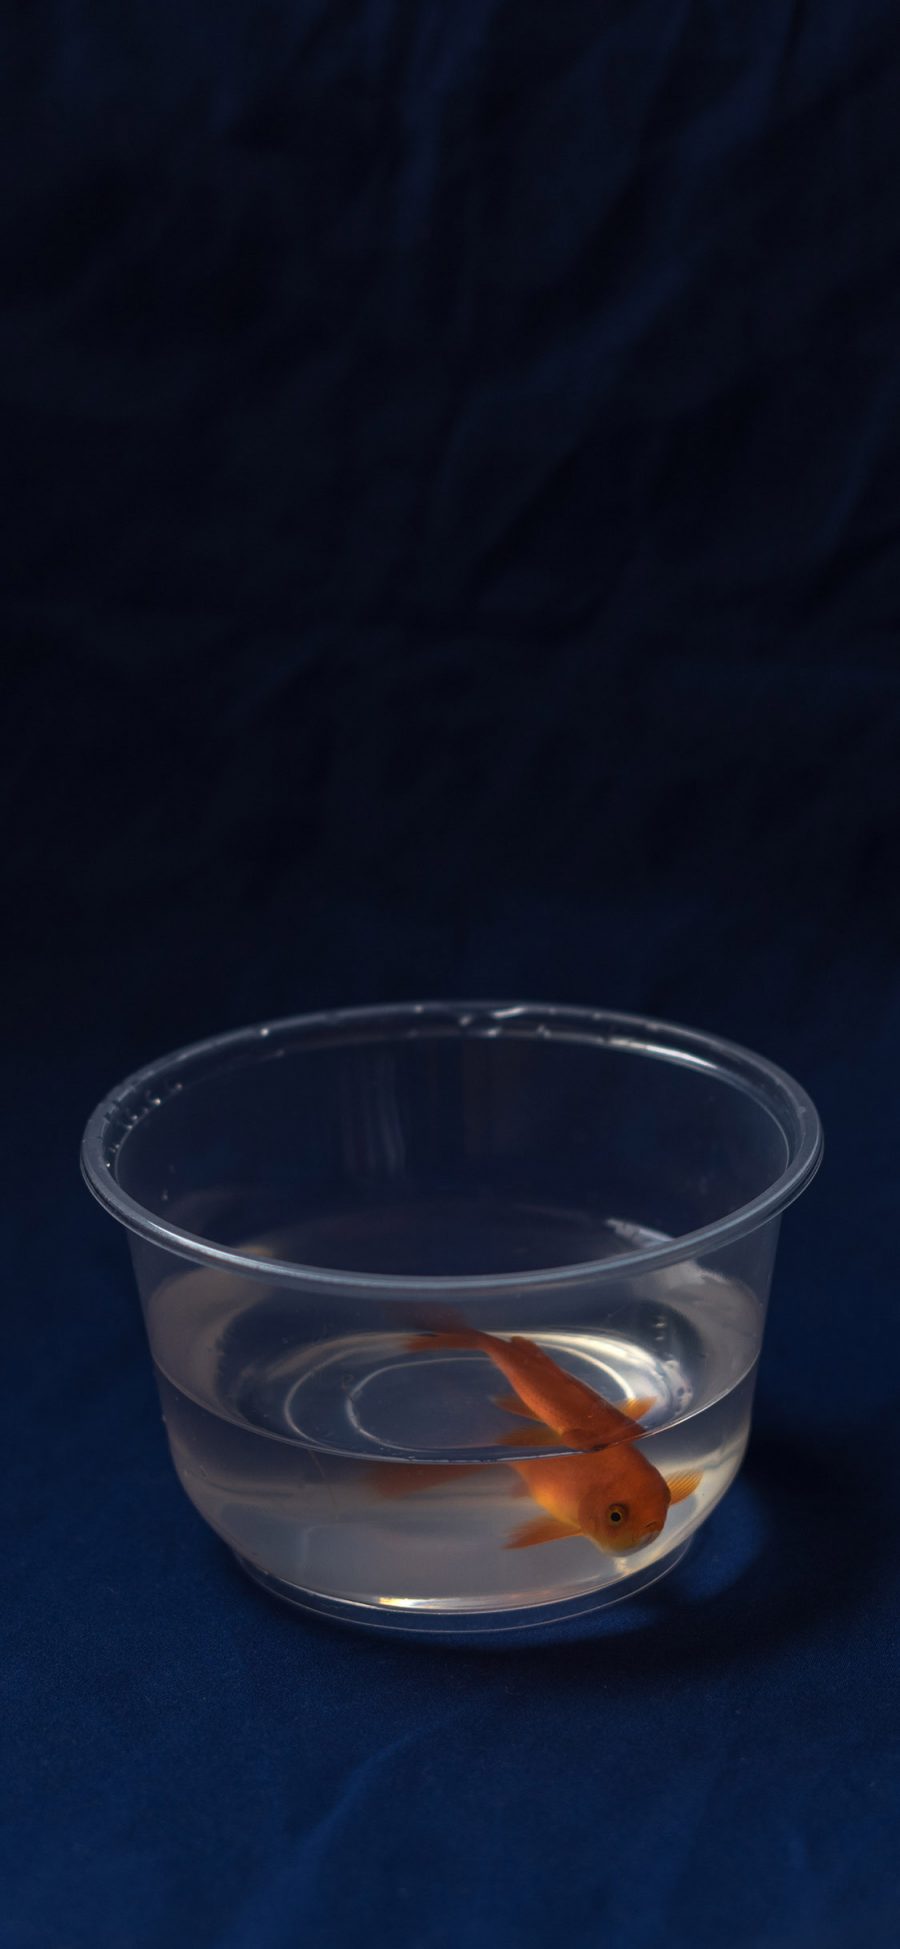 [2436×1125]金鱼 水族 塑料碗 深蓝 苹果手机壁纸图片